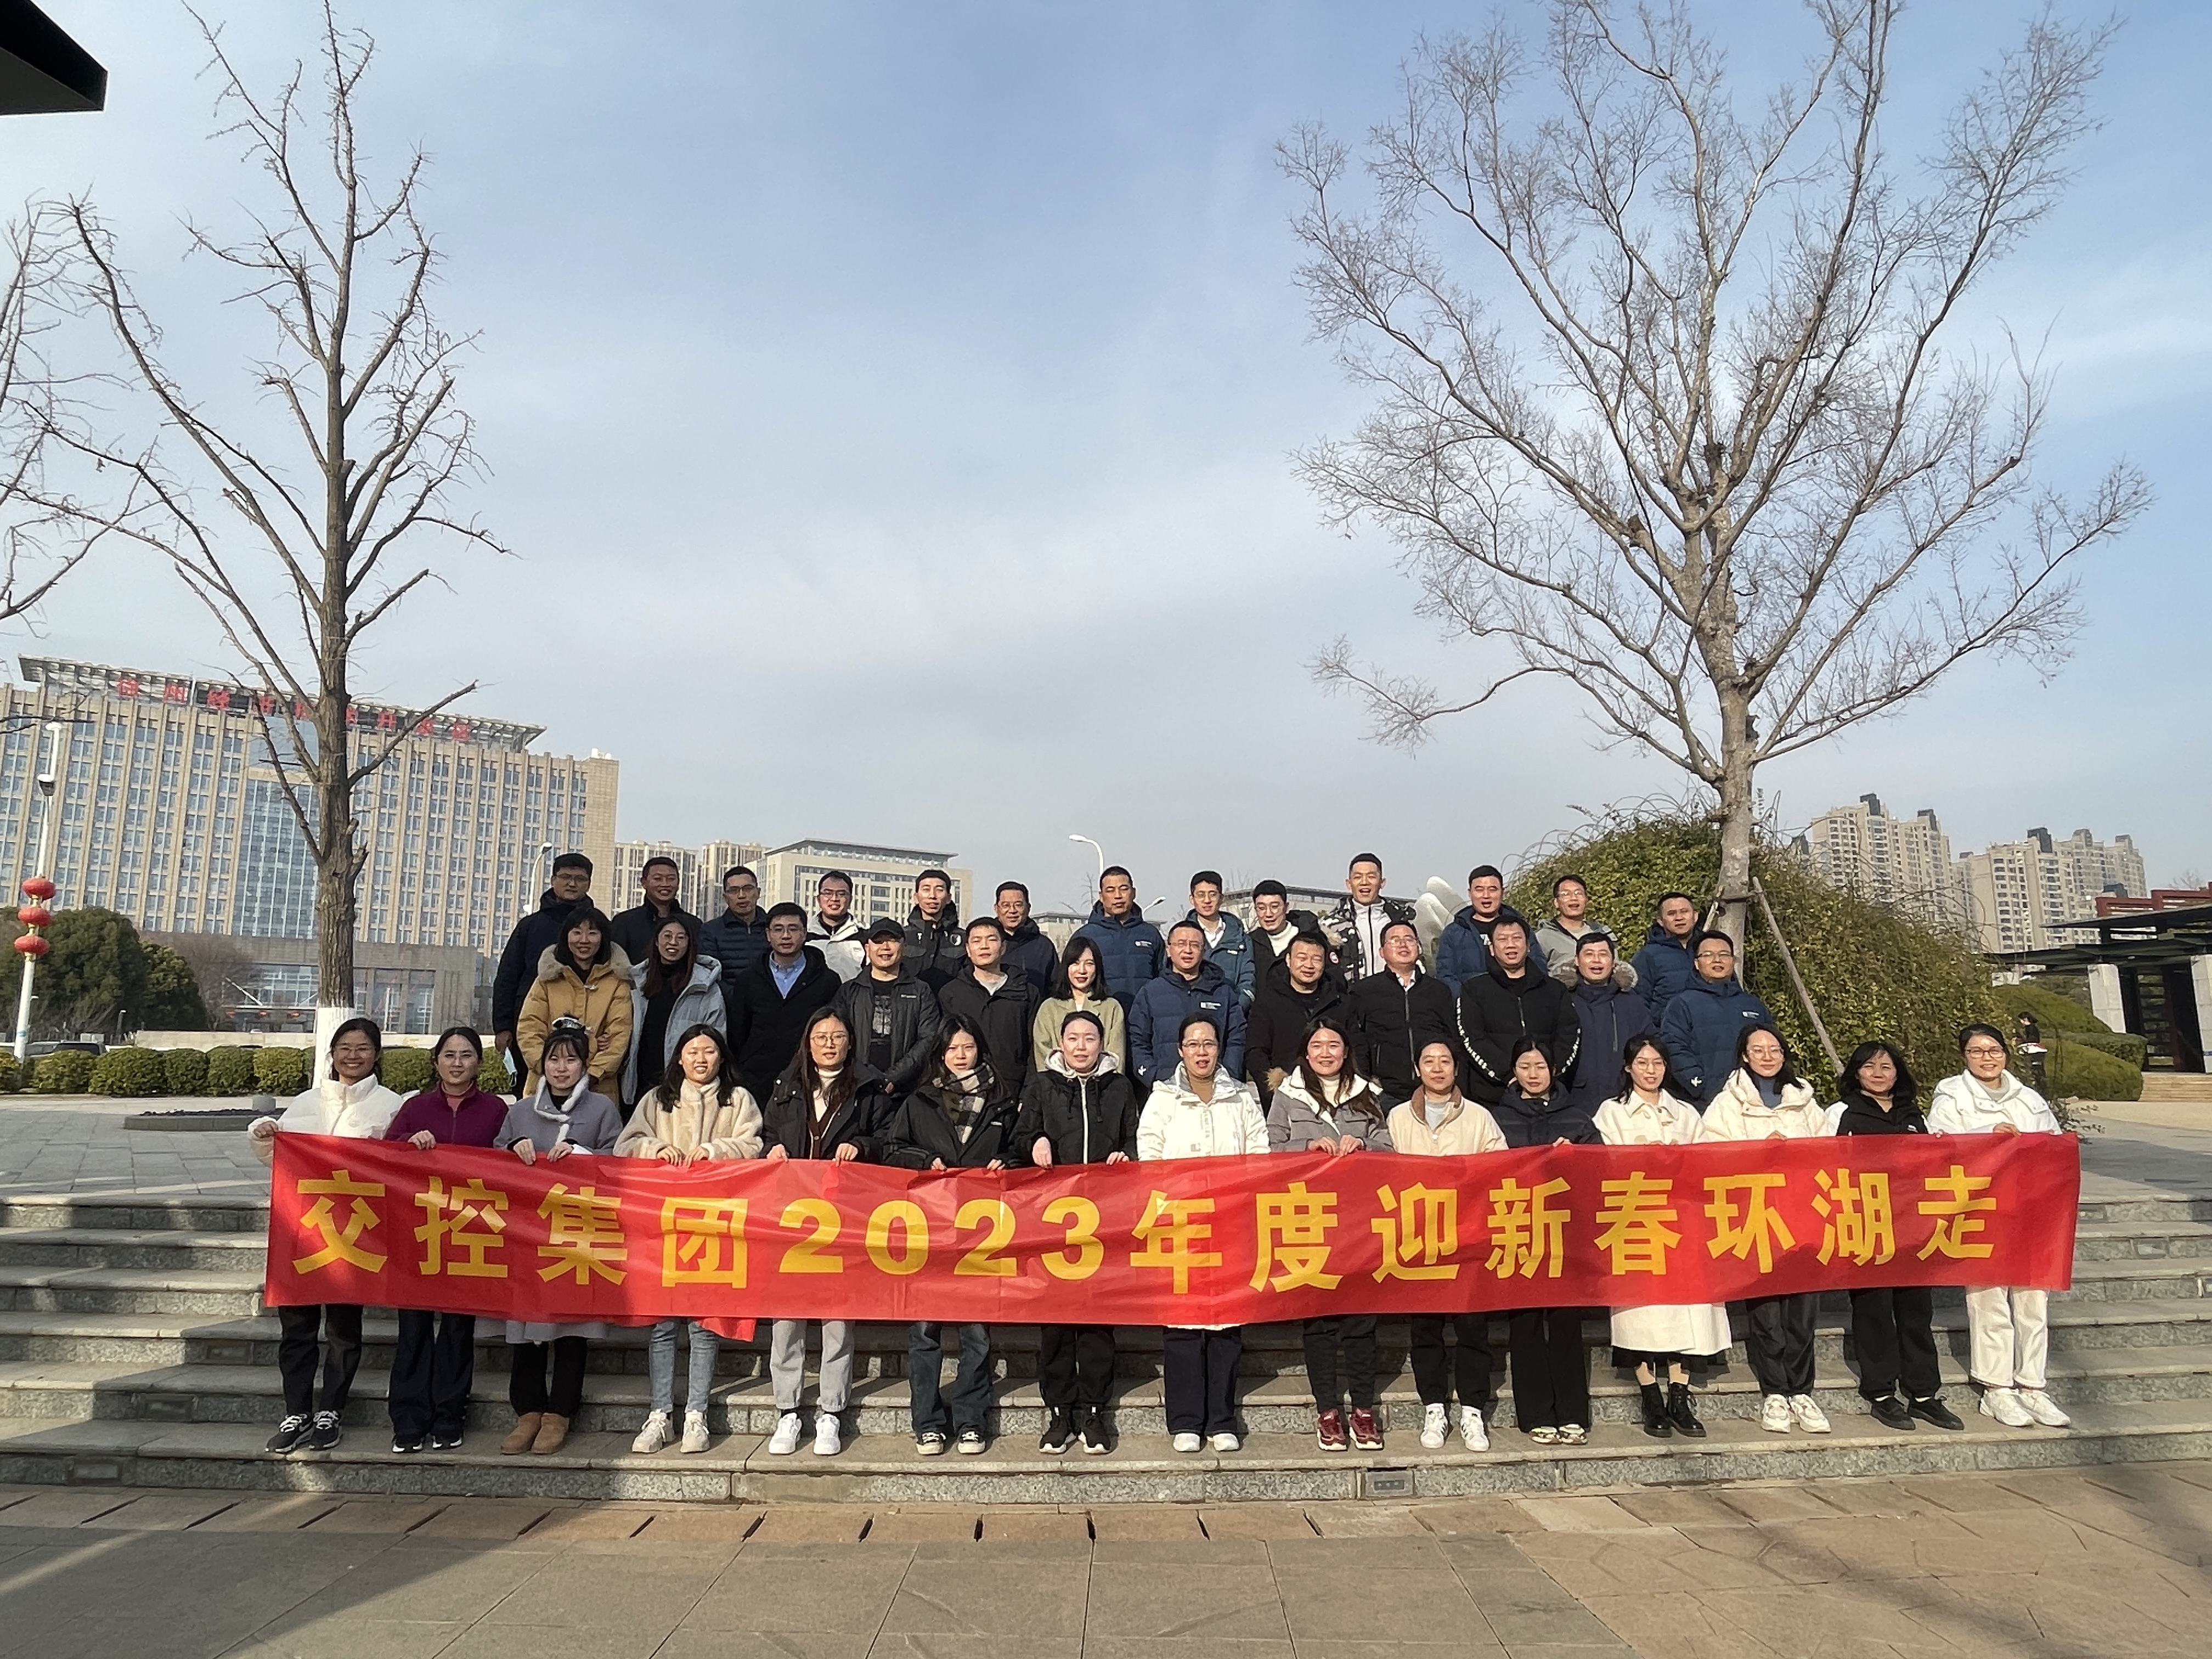 yp街机集团工会举办“迎新春 环湖走”运动